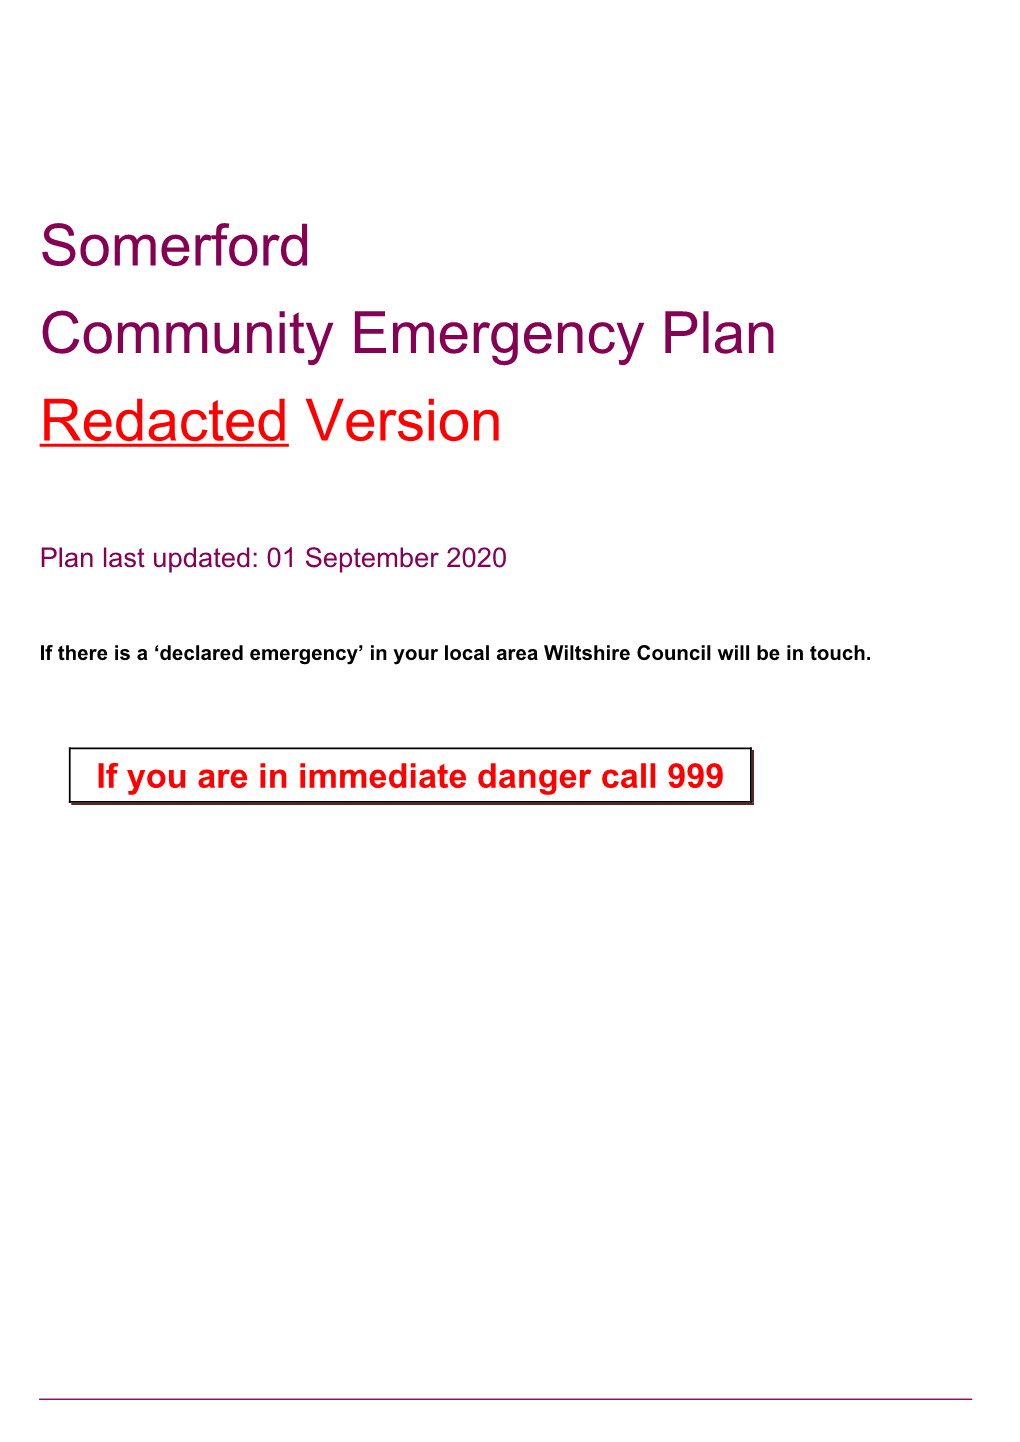 Somerford Community Emergency Plan Redacted Version